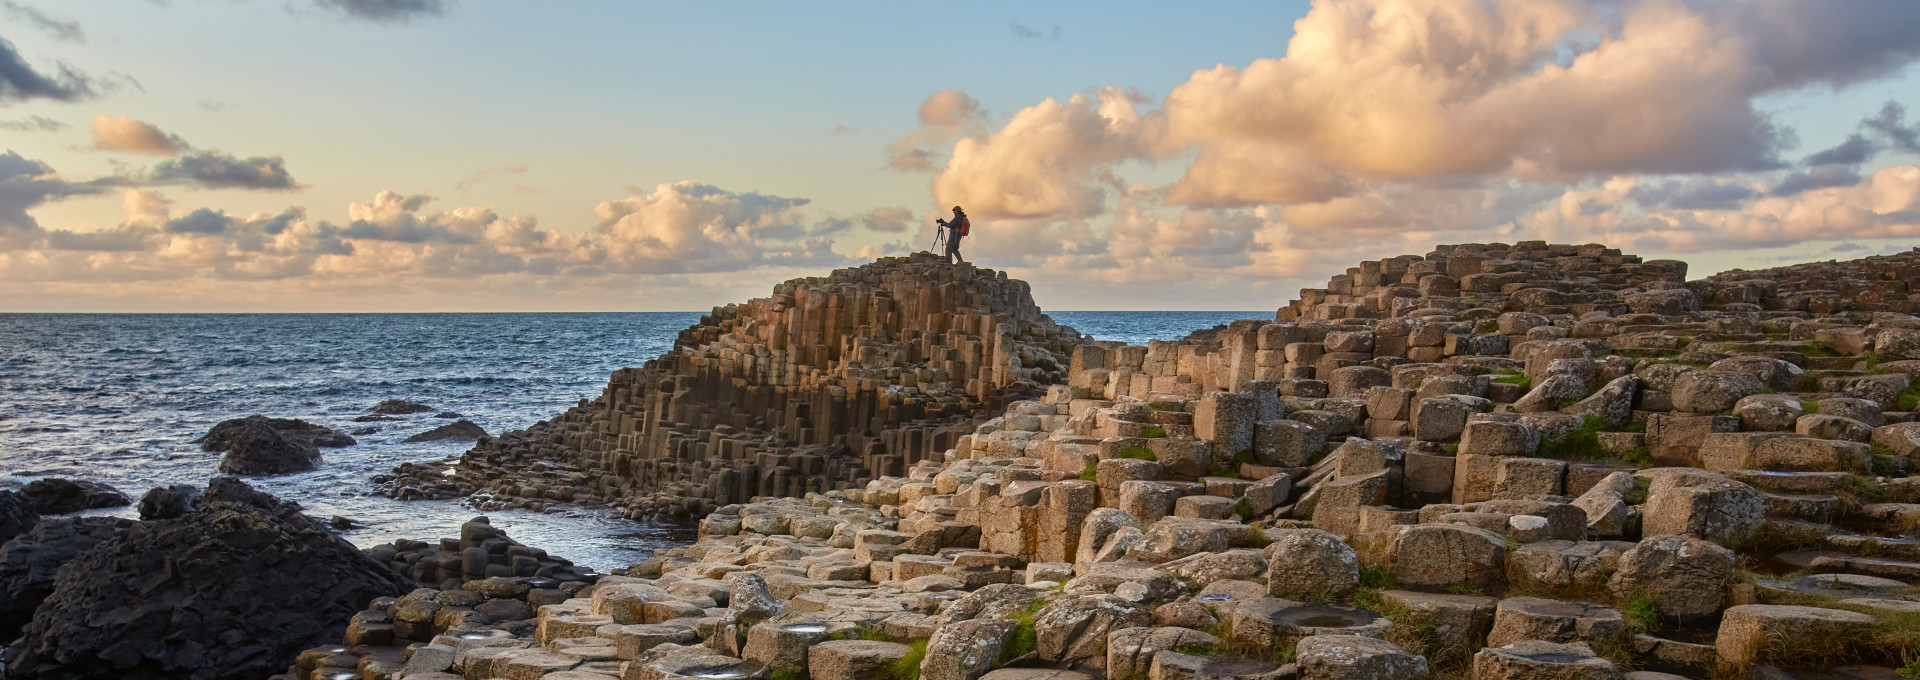 Basaltsäulen an der Küste in Nordirland